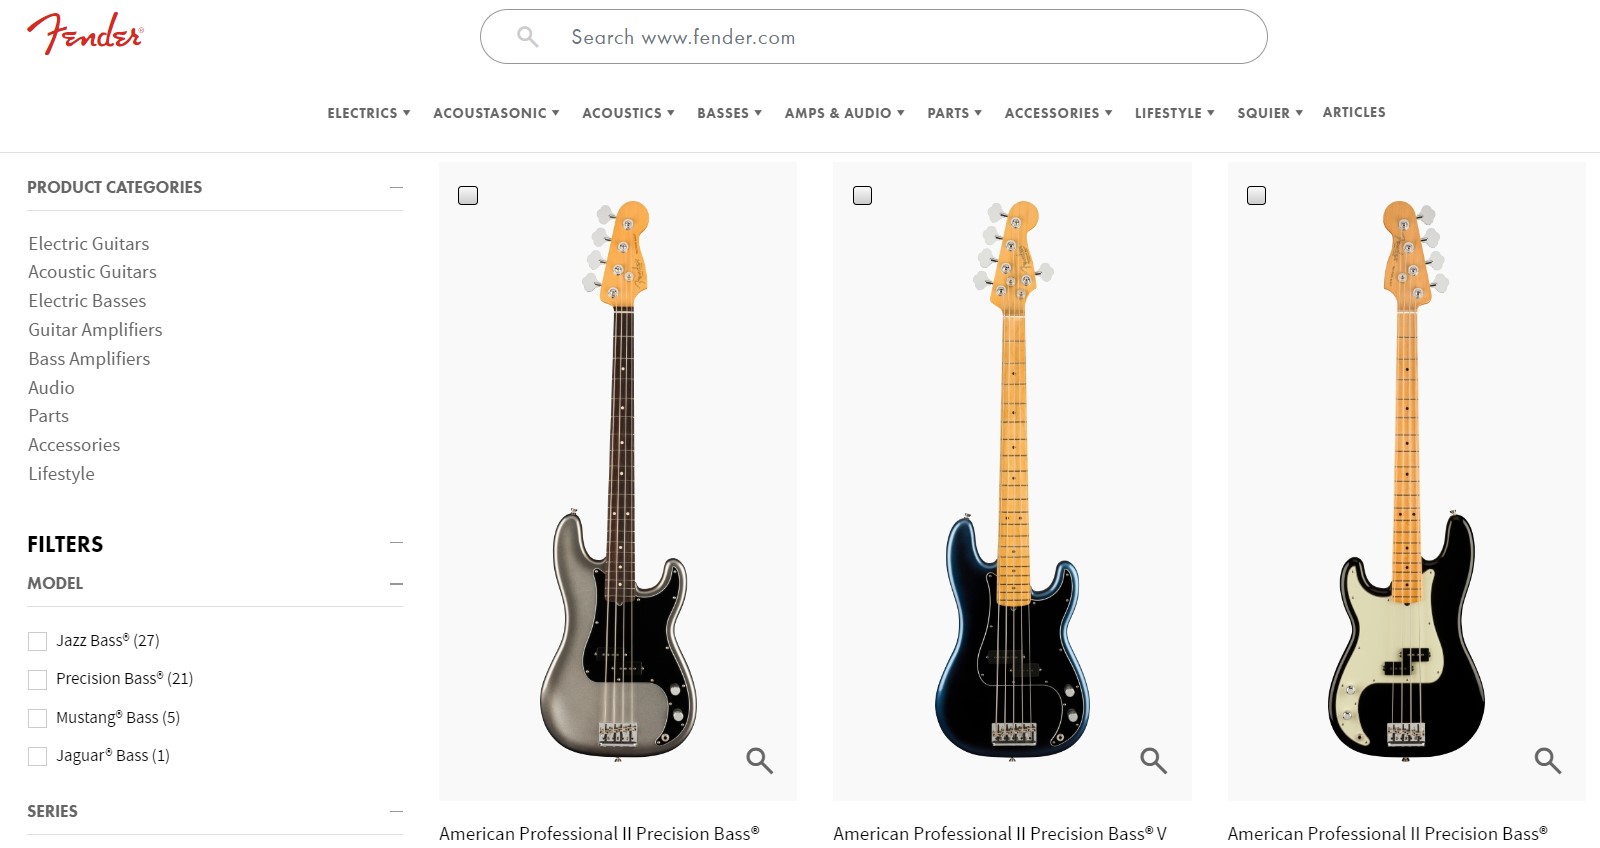 How to start an e-commerce business: Fender's e-commerce website